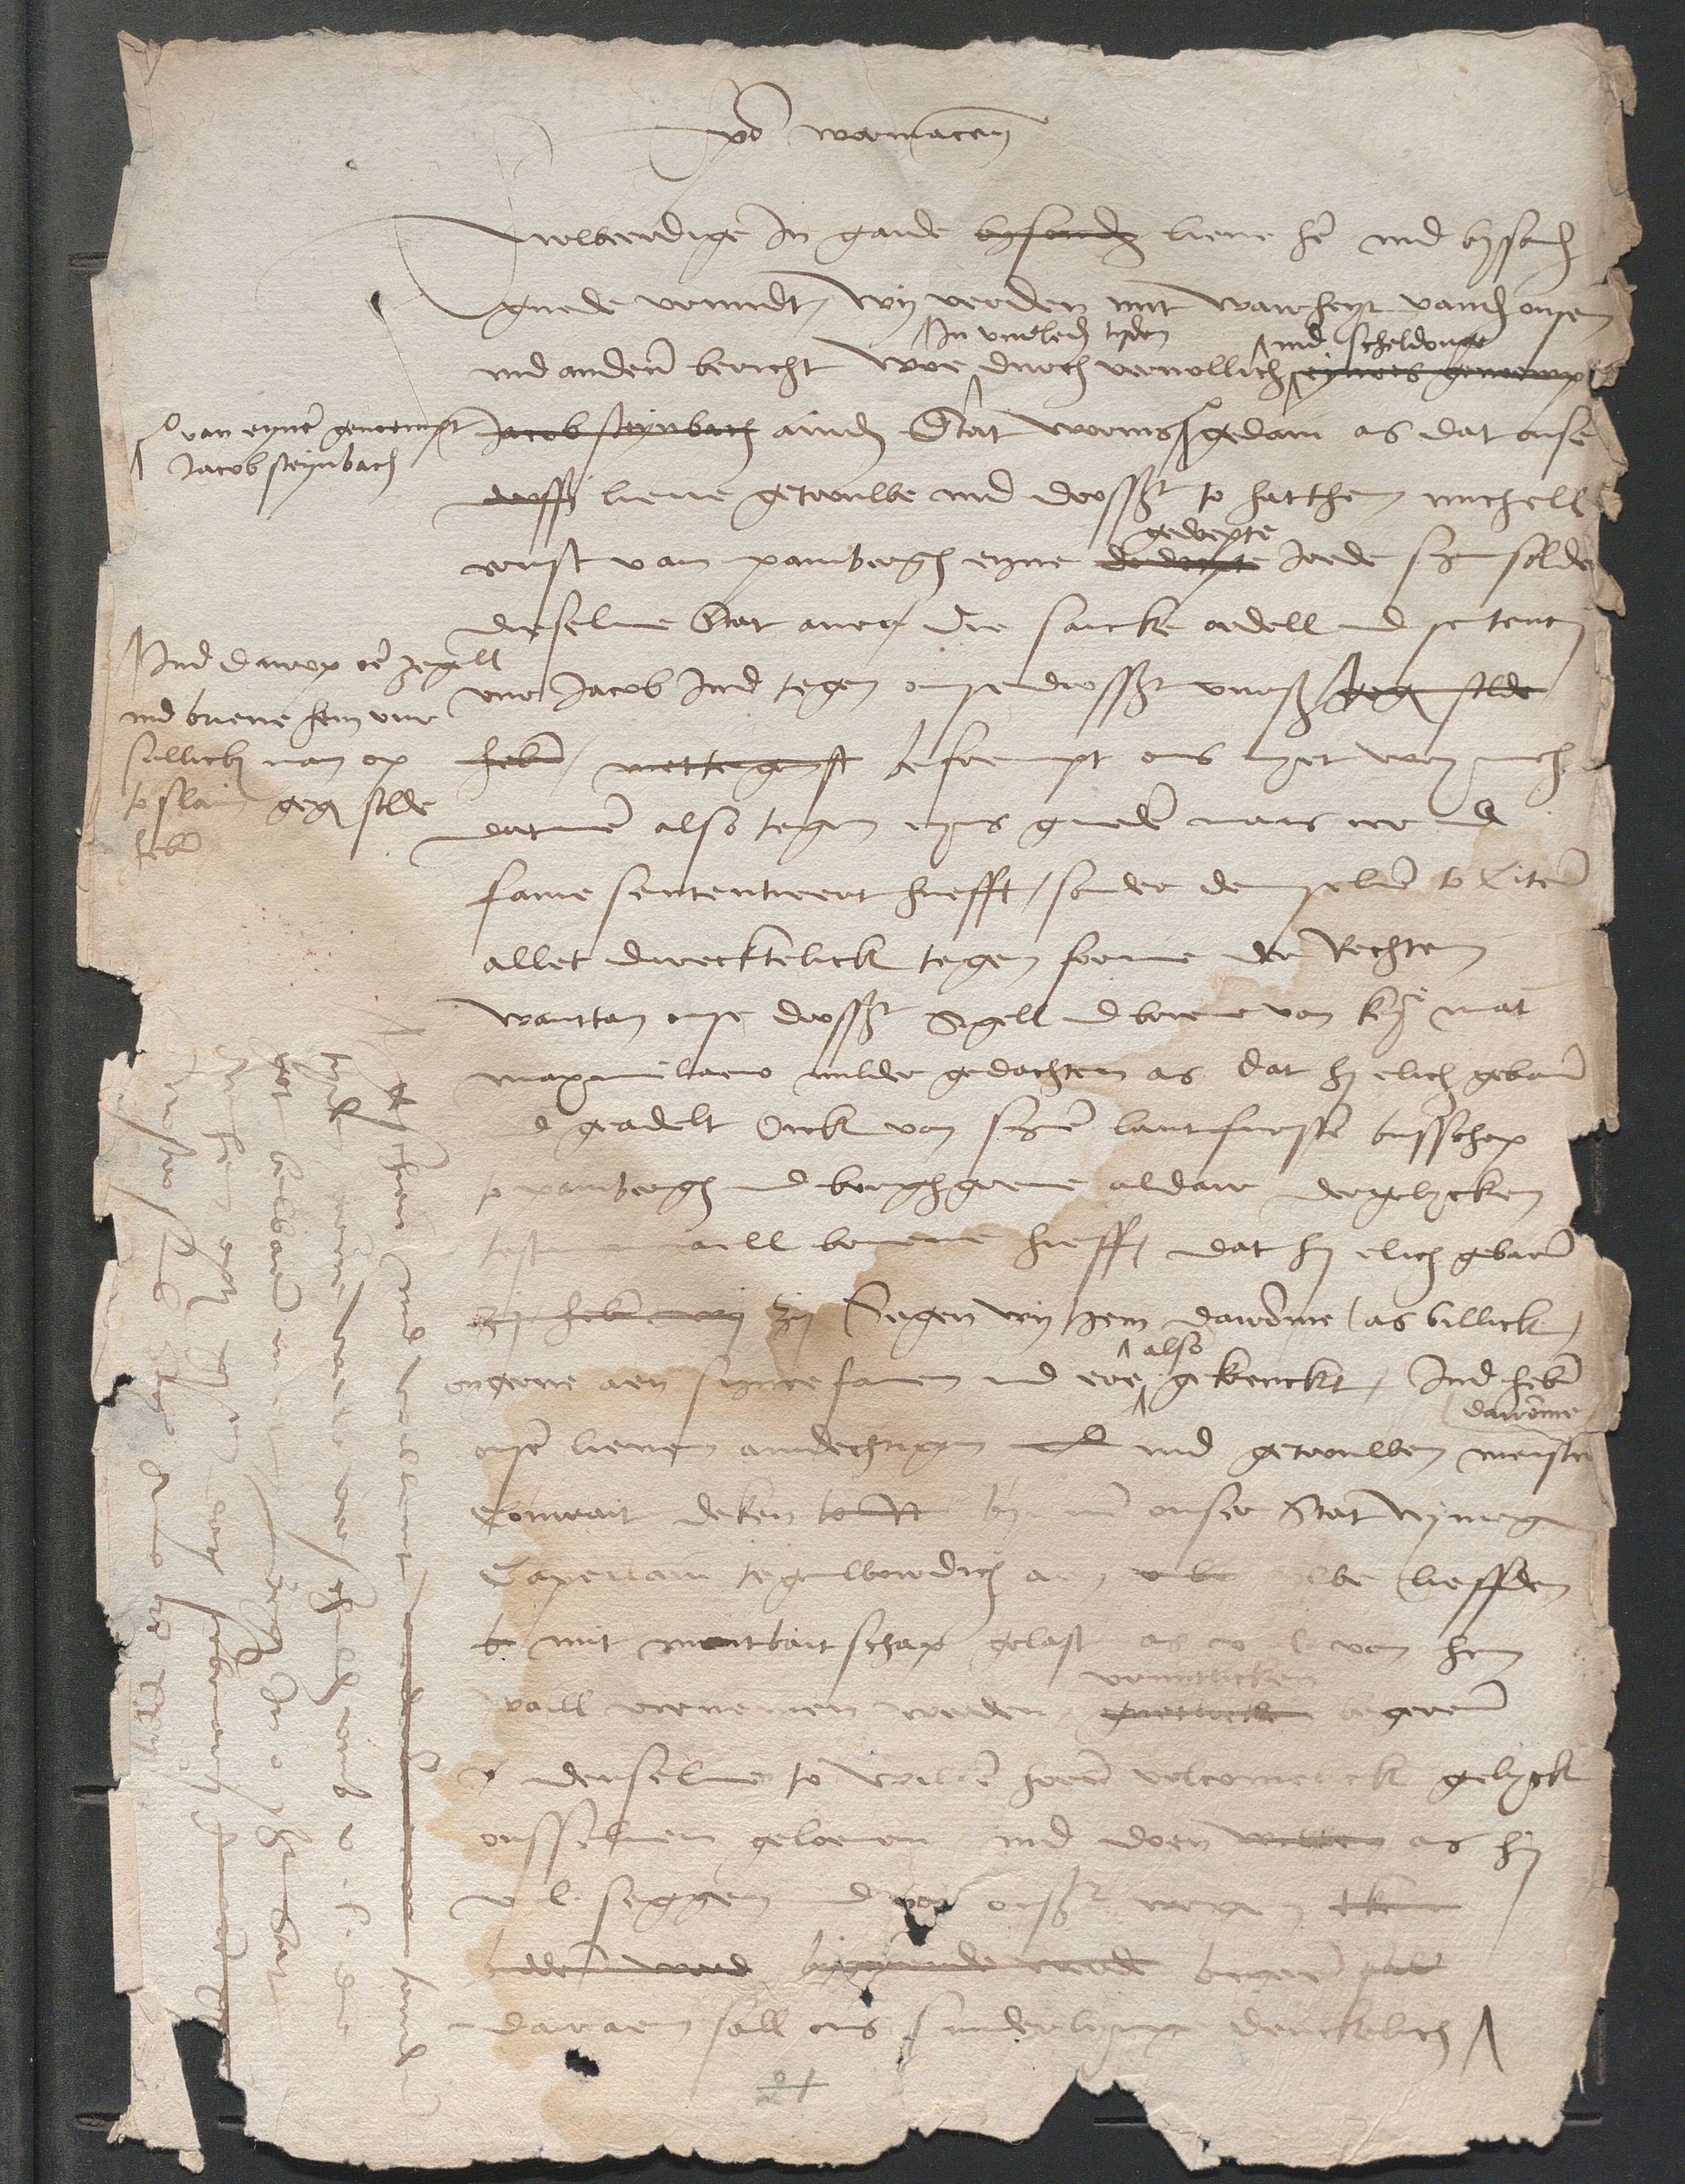 Geloofsbrief van hertog Karel uit 1522